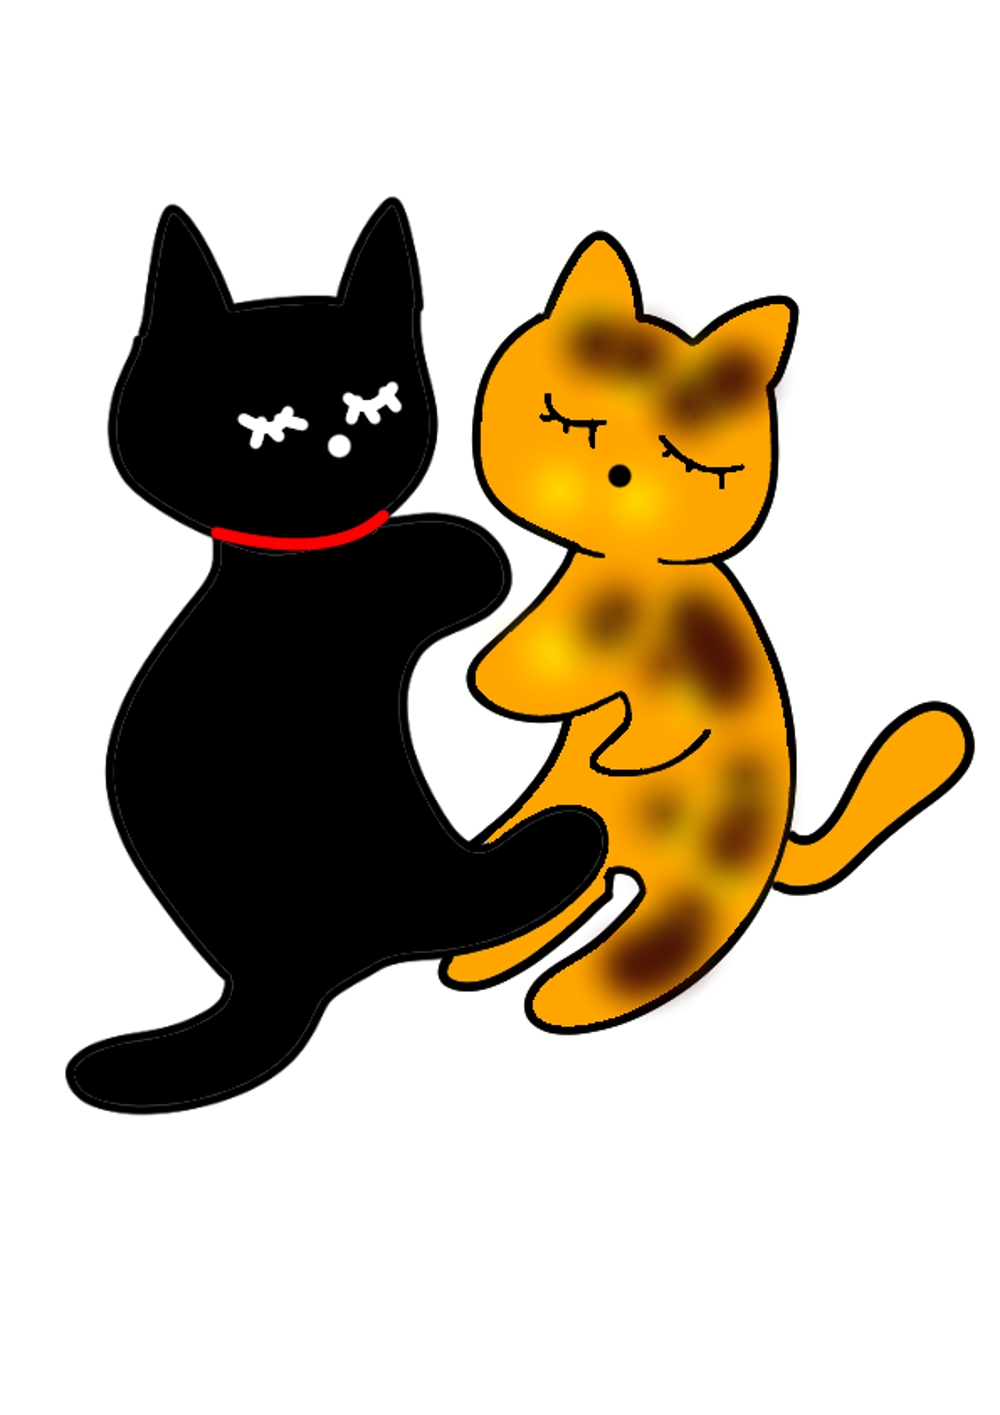 姉妹猫「るうとりり」の食器用キャラクターデザイン　